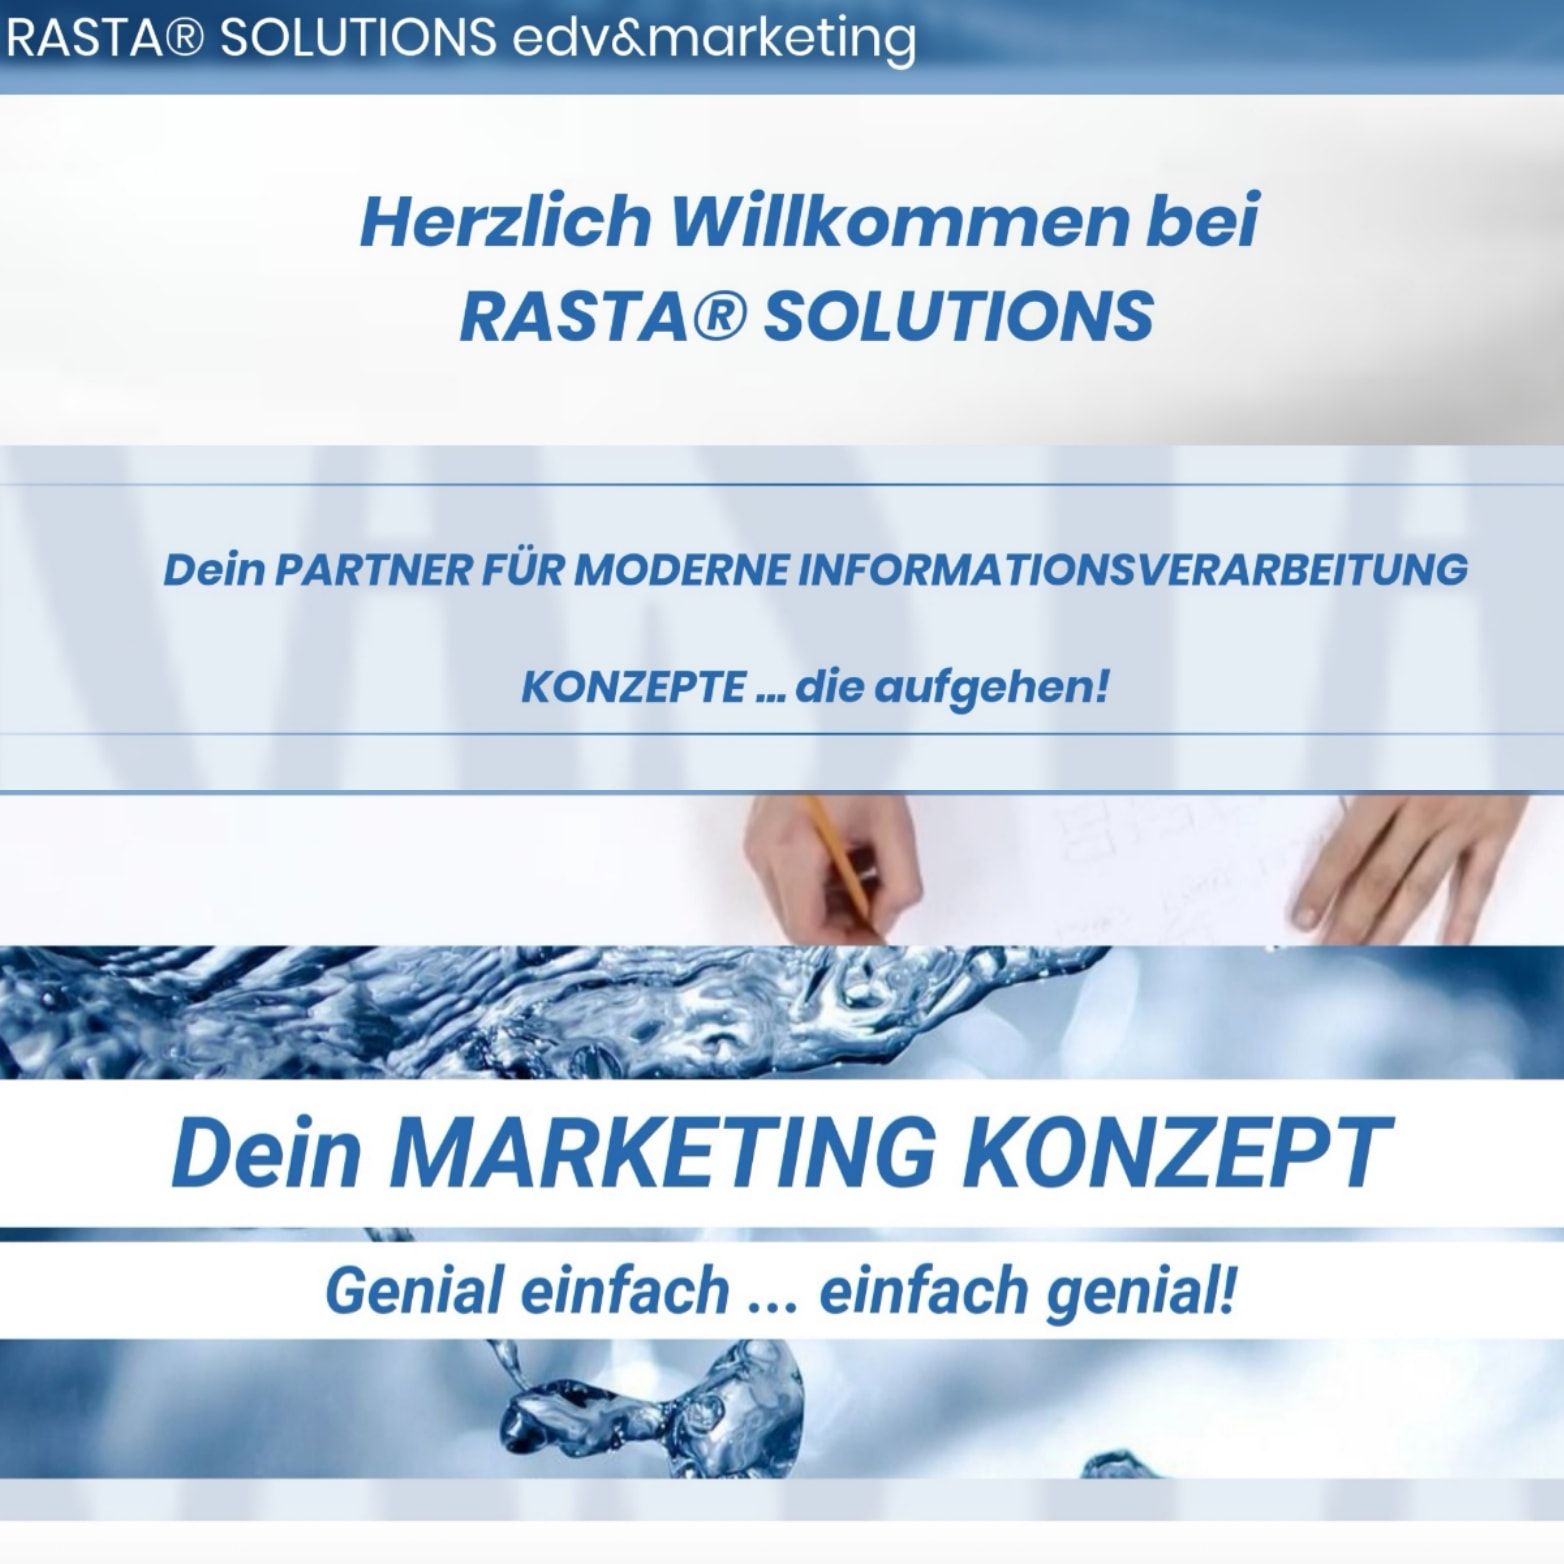 Rainer Stauber - RASTA® SOLUTIONS edv & marketing